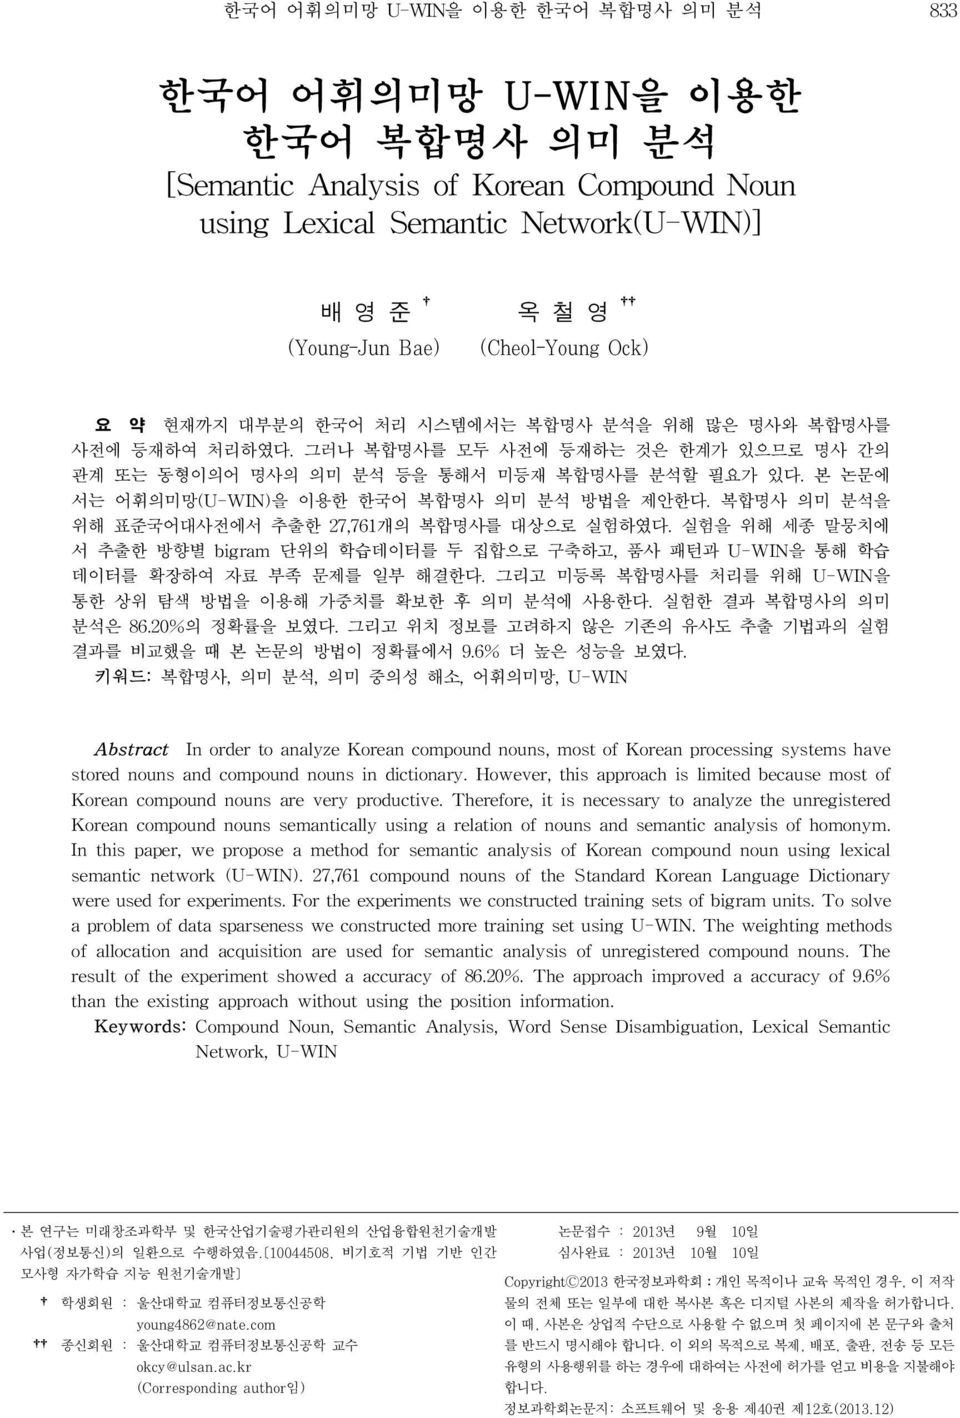 본 논문에 서는 어휘의미망(U-WIN)을 이용한 한국어 복합명사 의미 분석 방법을 제안한다. 복합명사 의미 분석을 위해 표준국어대사전에서 추출한 27,761개의 복합명사를 대상으로 실험하였다.